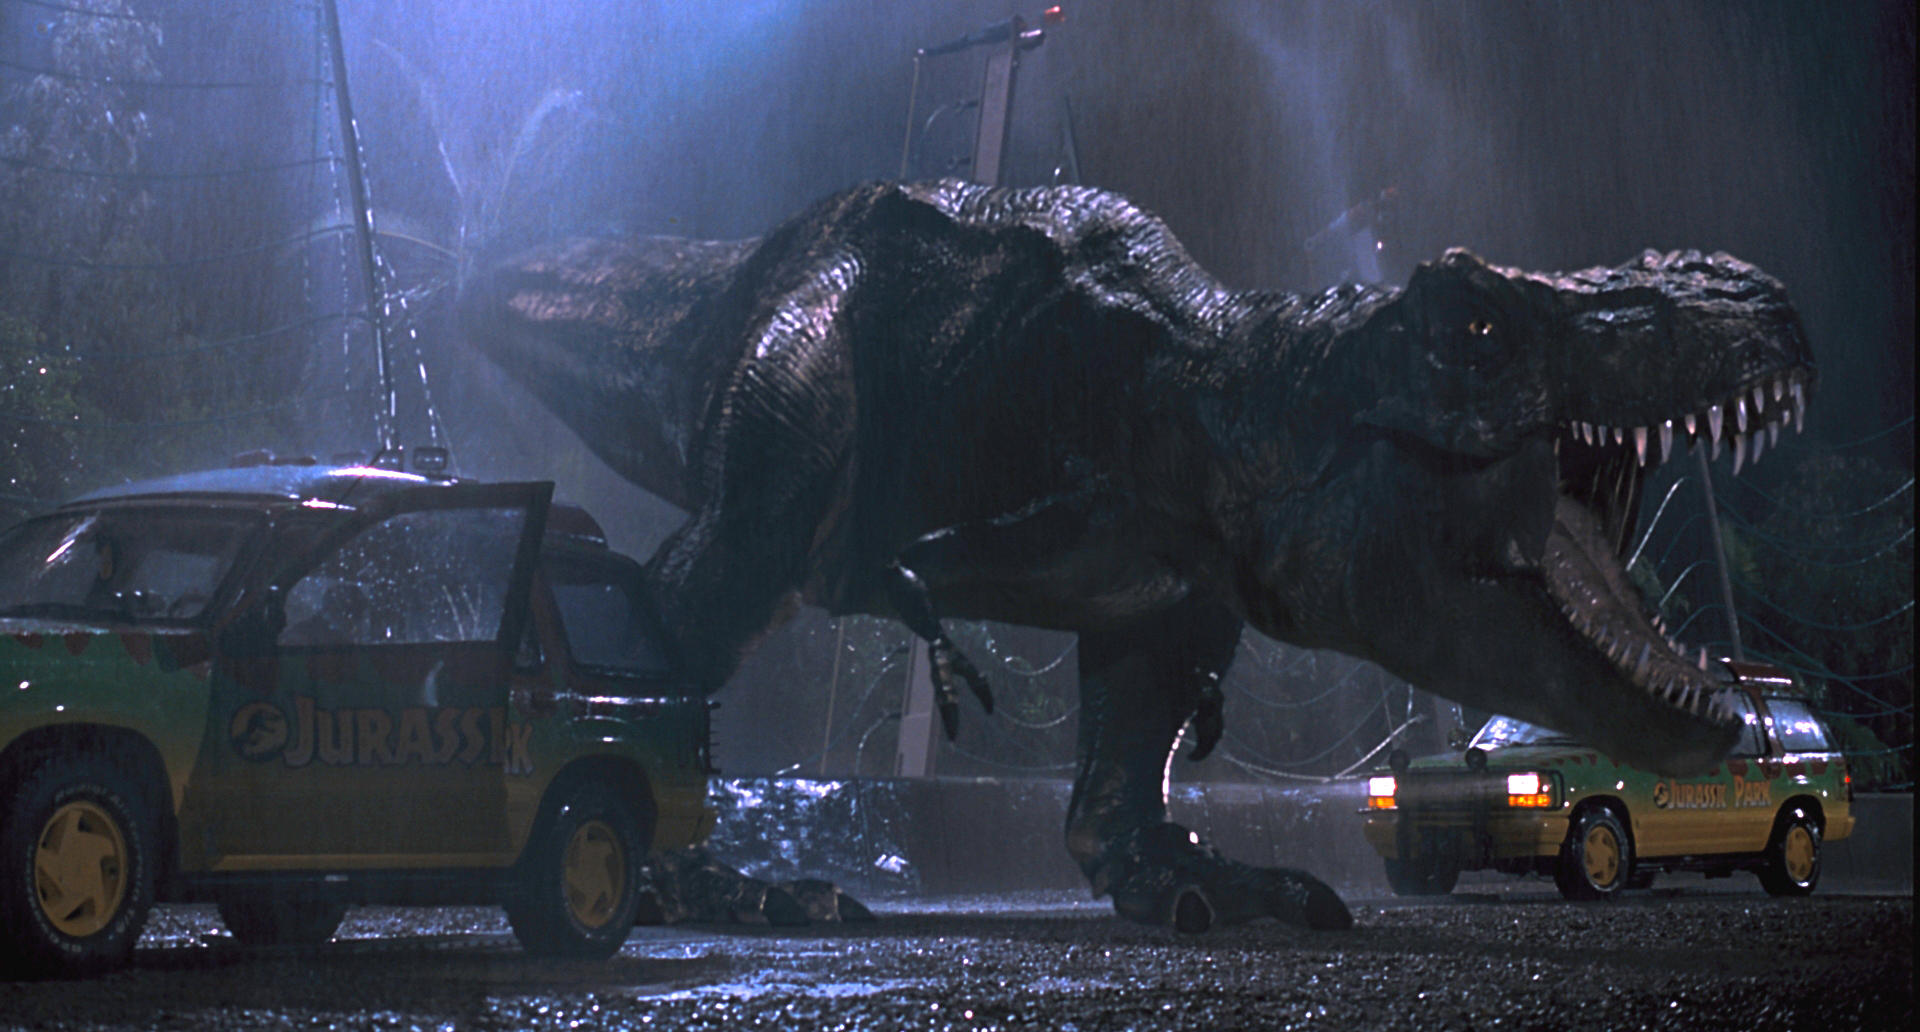 Jurassic Park – O Parque dos Dinossauros